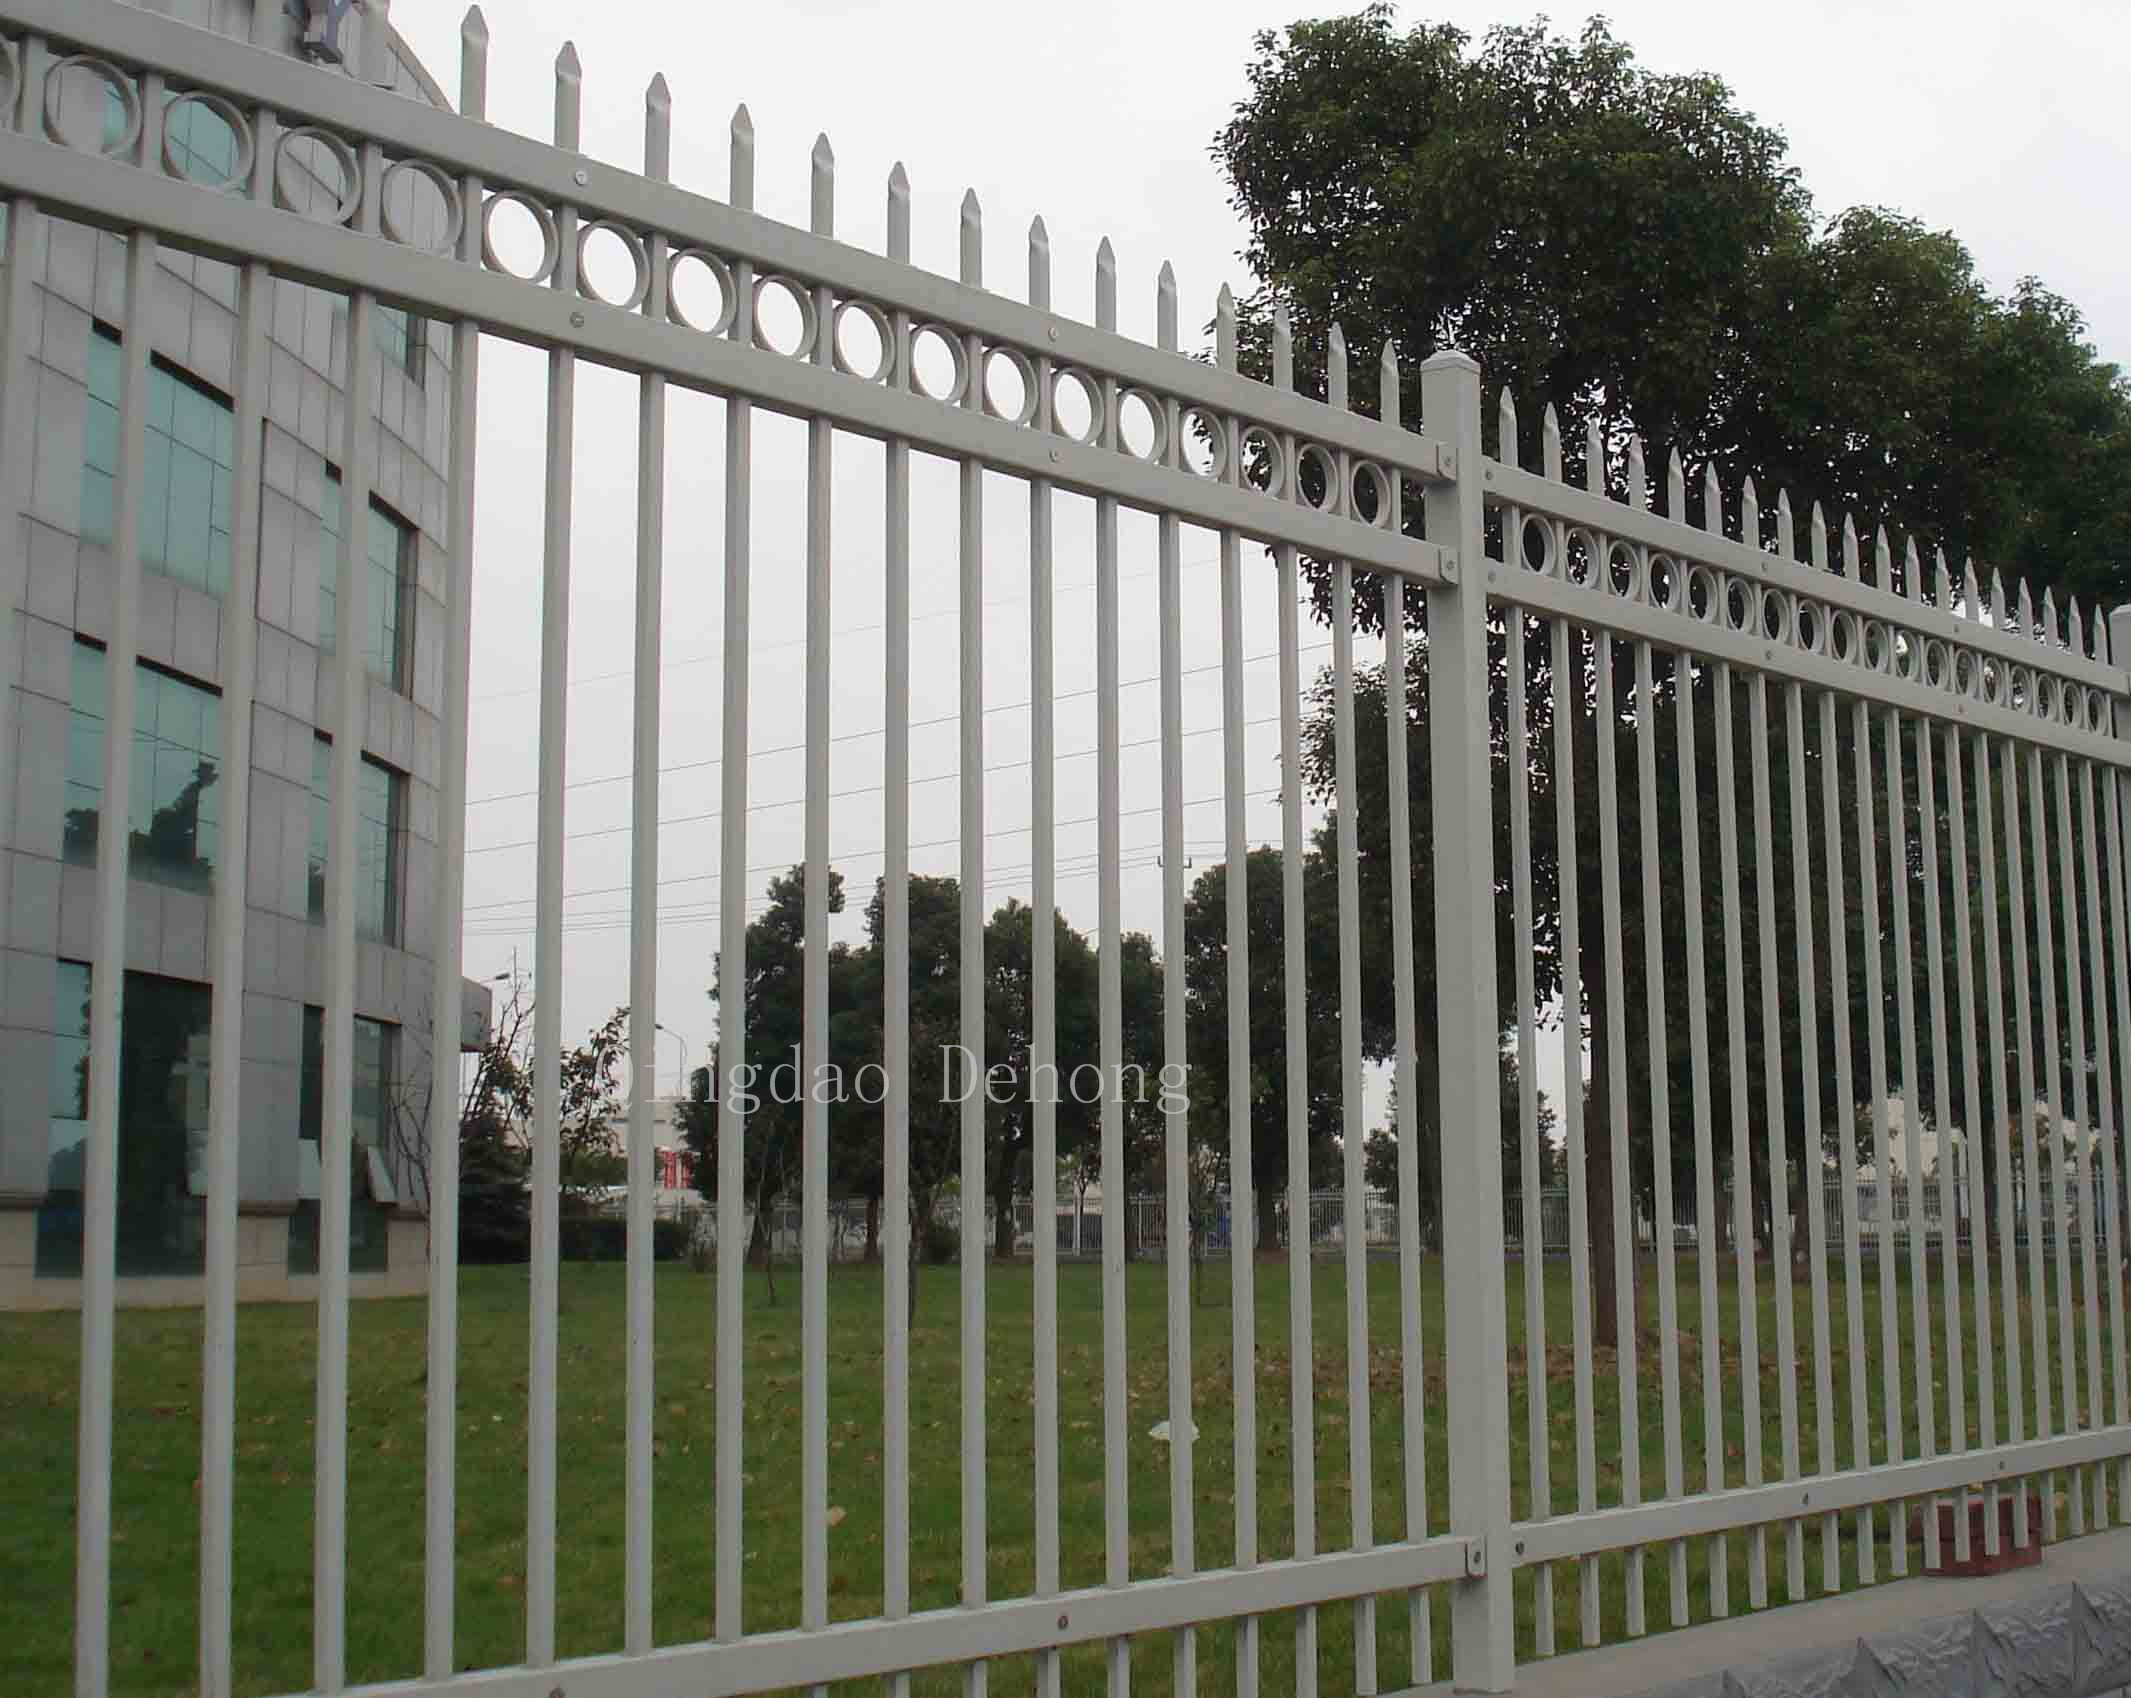 Wrought Iron Fence